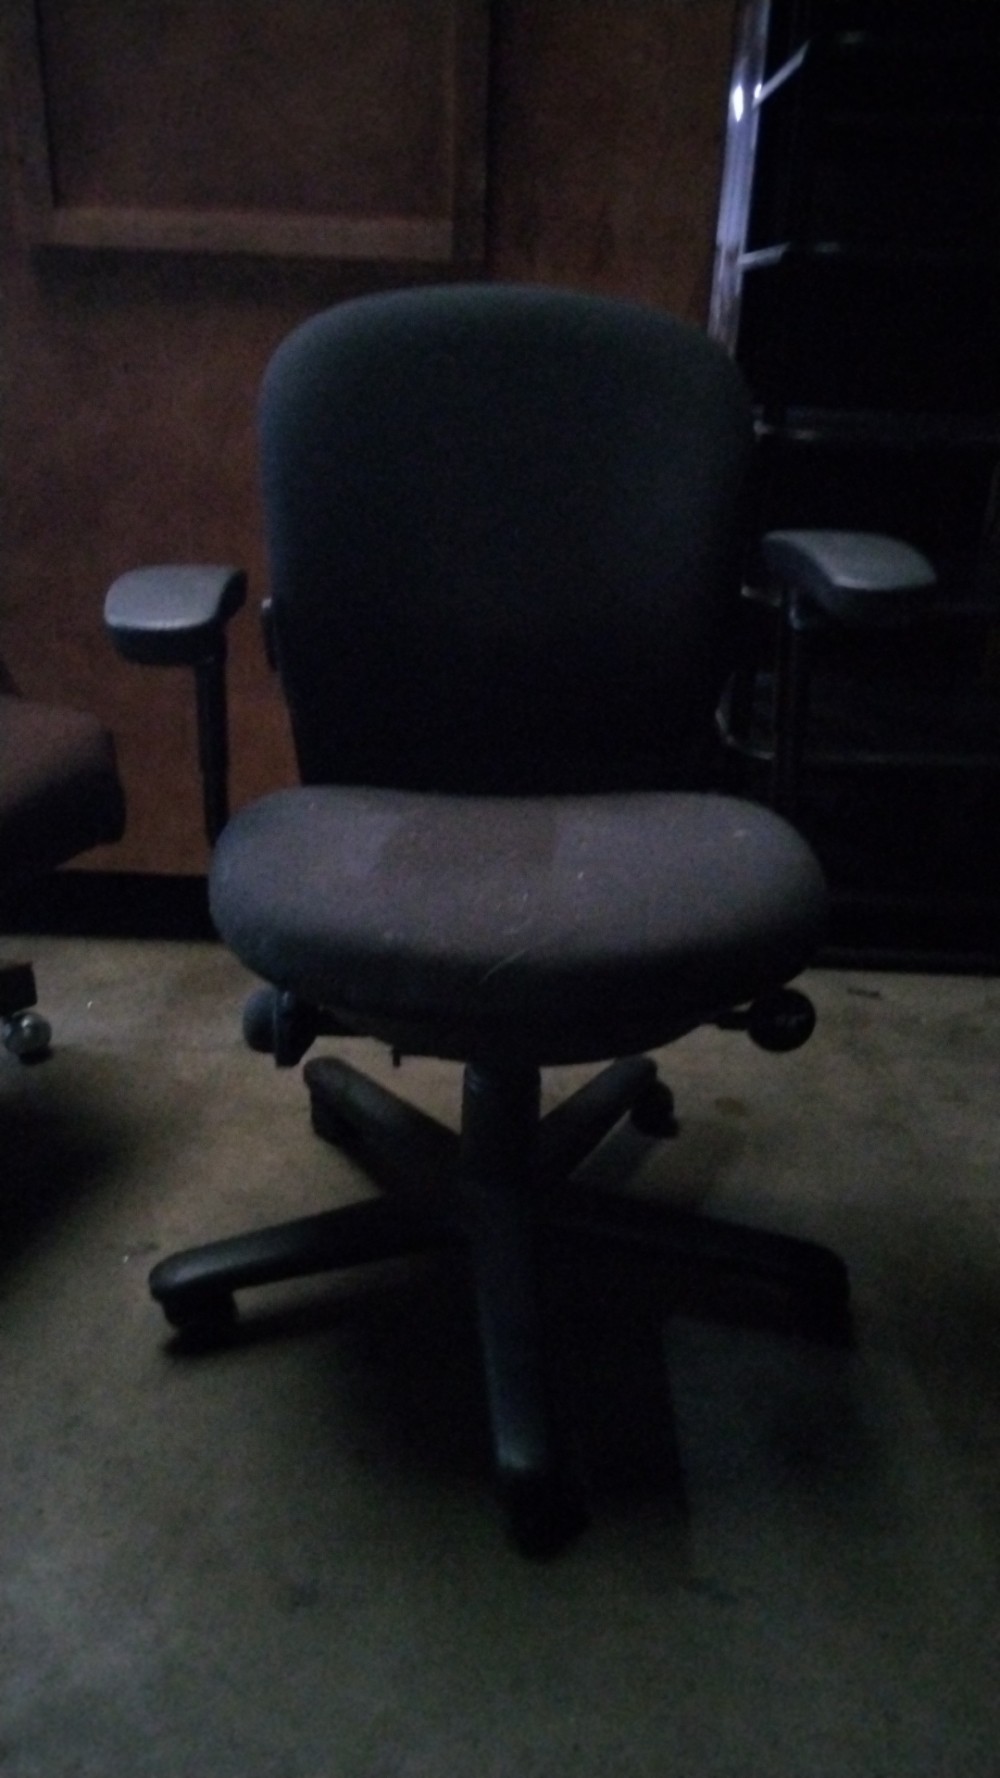  Multi tasking adjustable chair